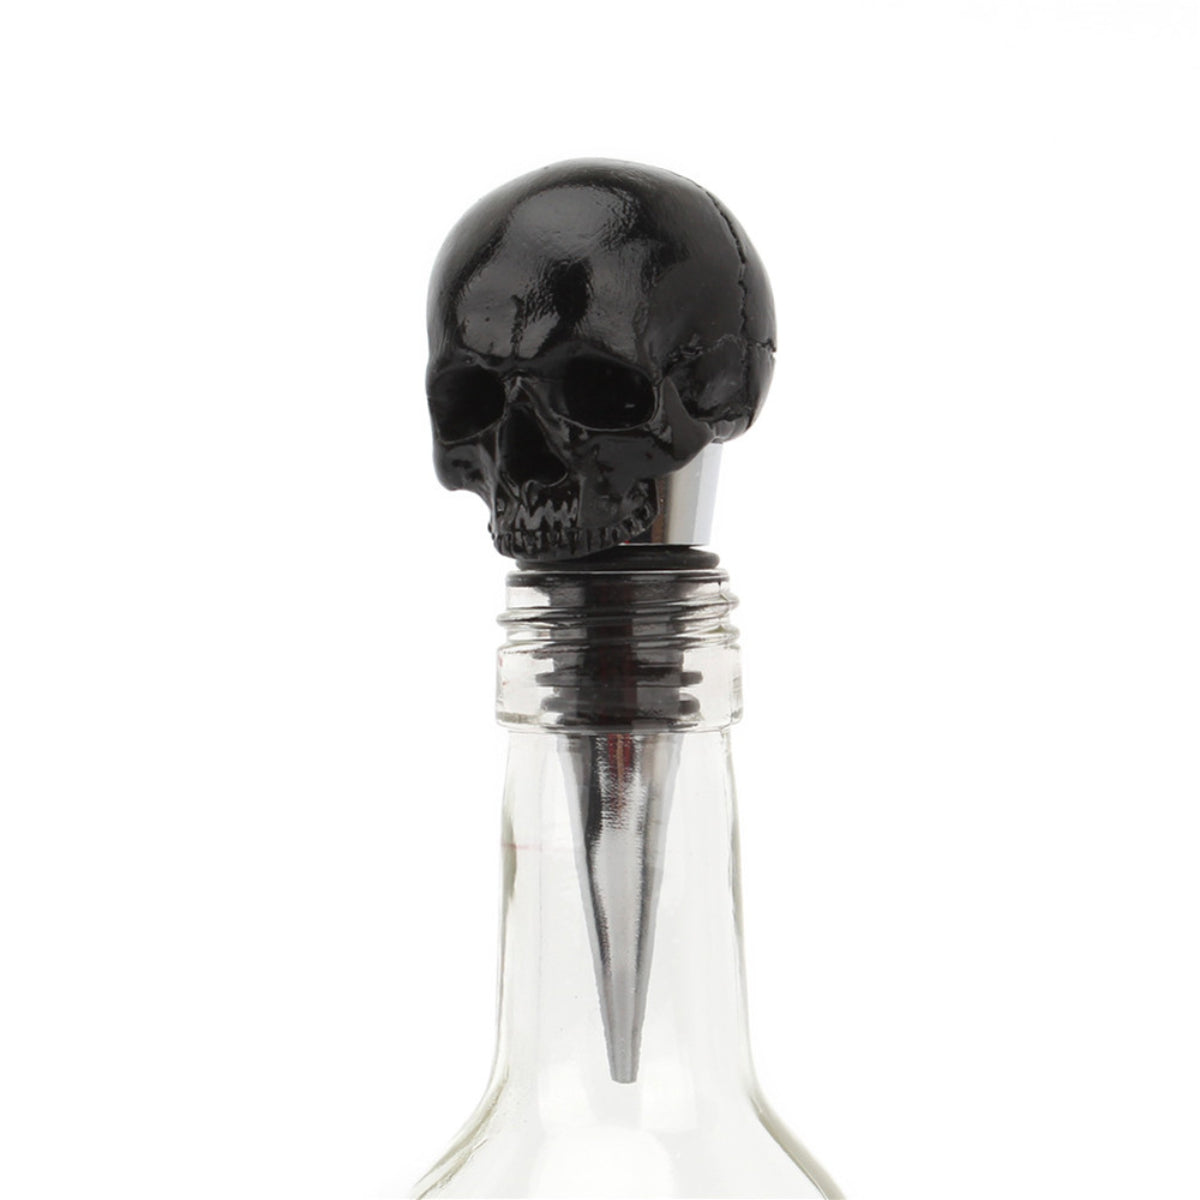 Ro Rox Gothic Black Skull Head Wine Bottle Stopper Cocktail Bar